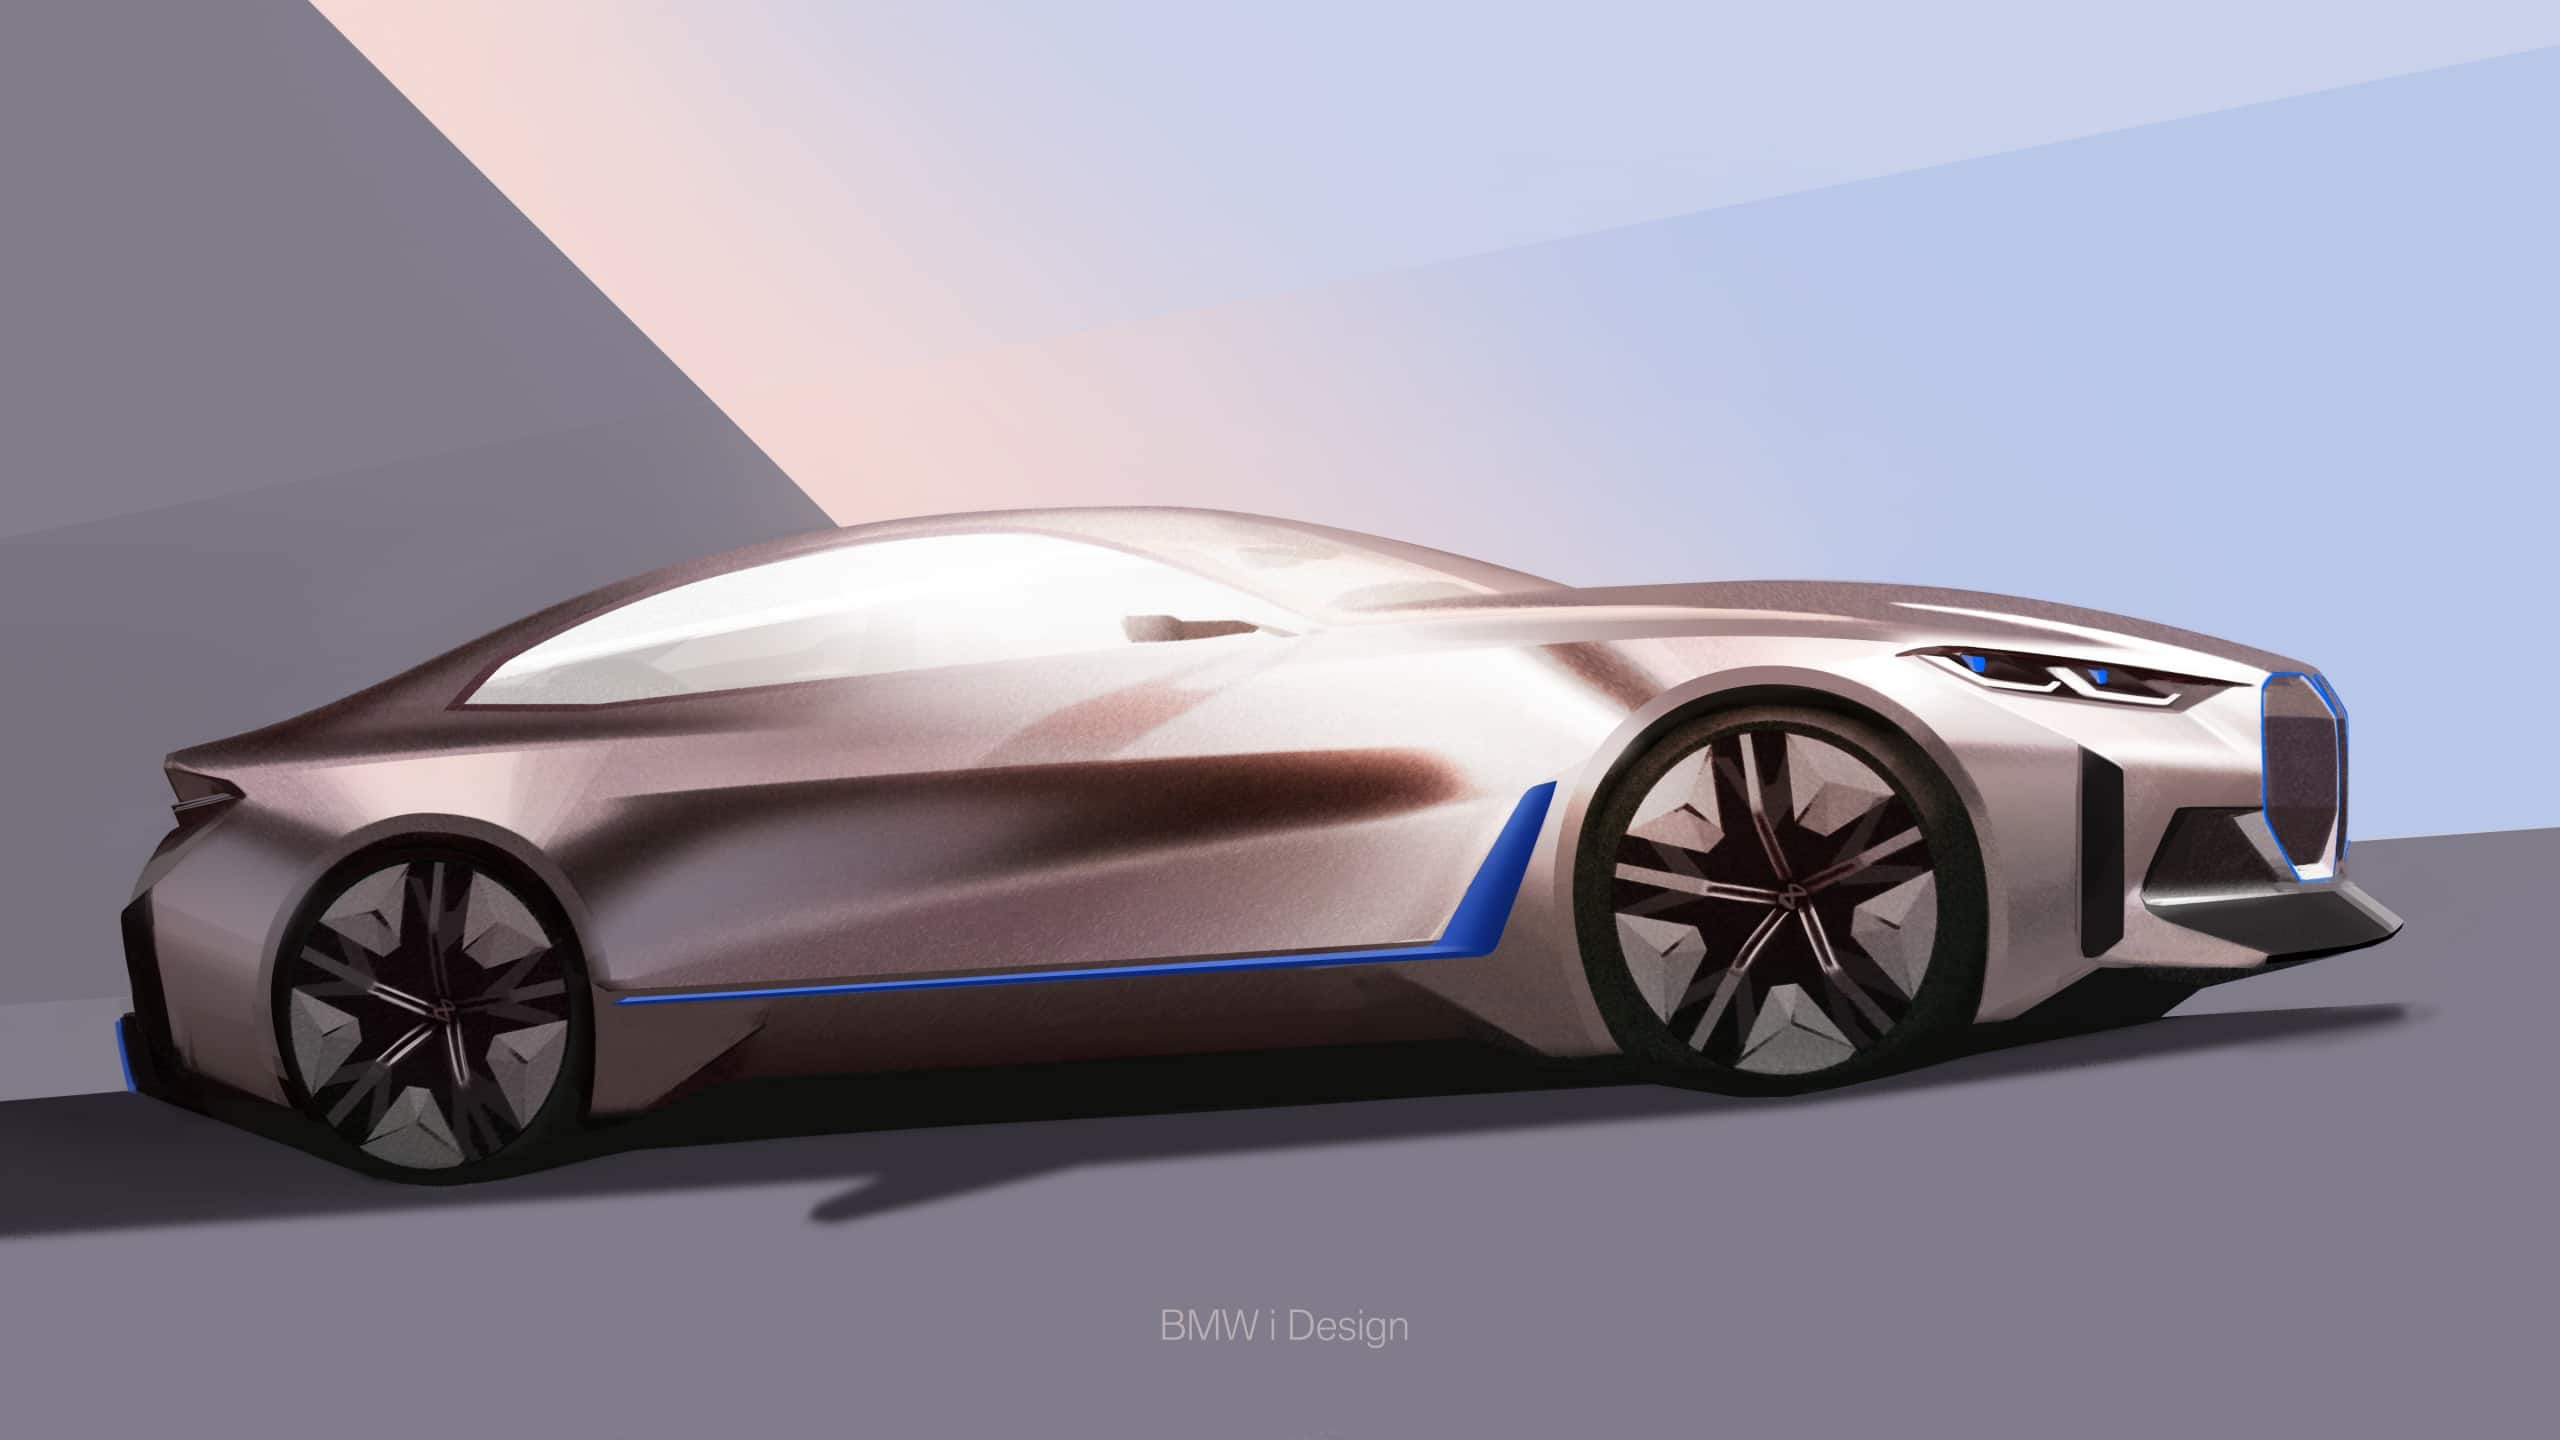 BMW reveals its new Concept i4